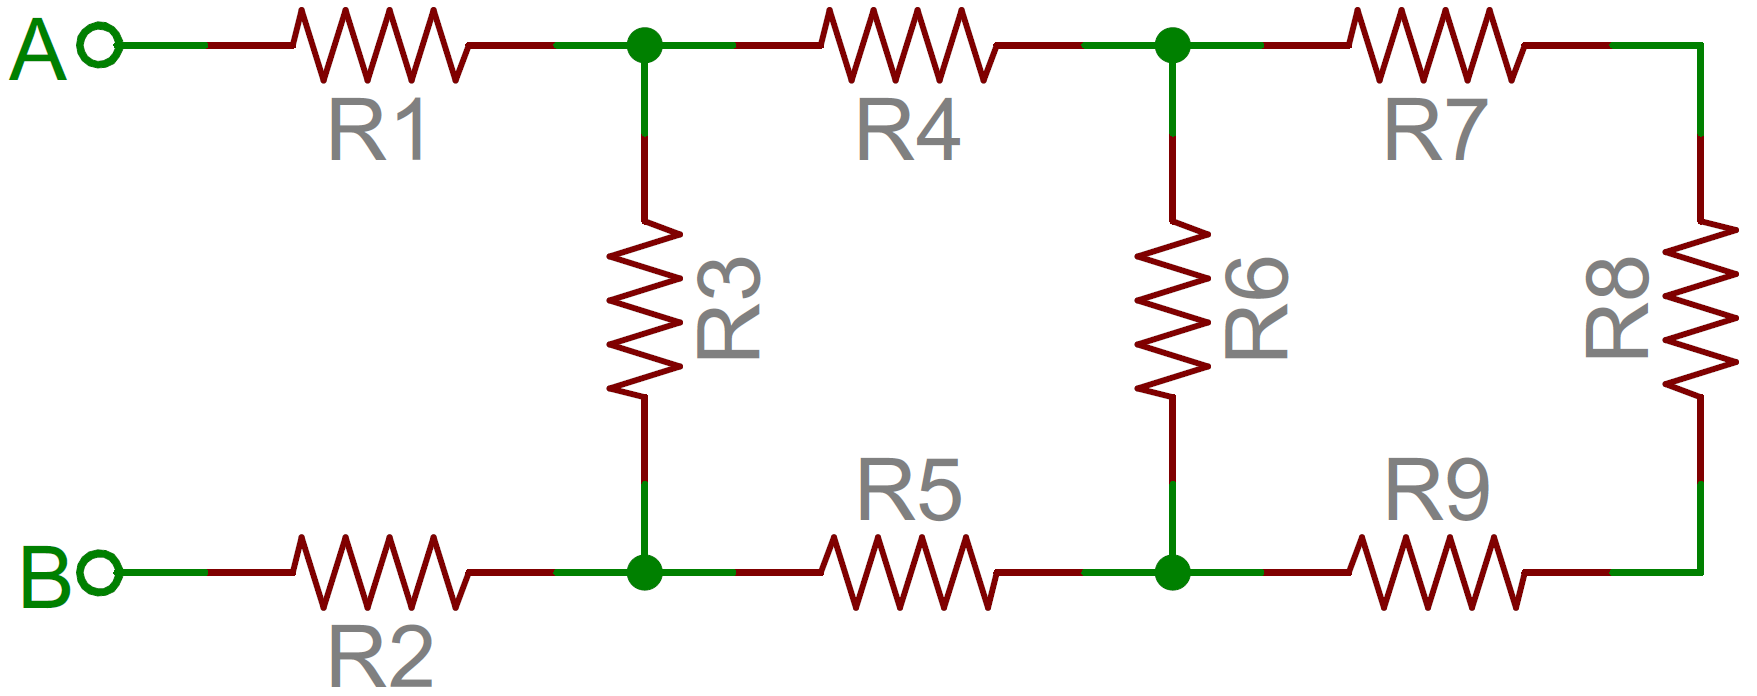 Contoh jaringan resistor